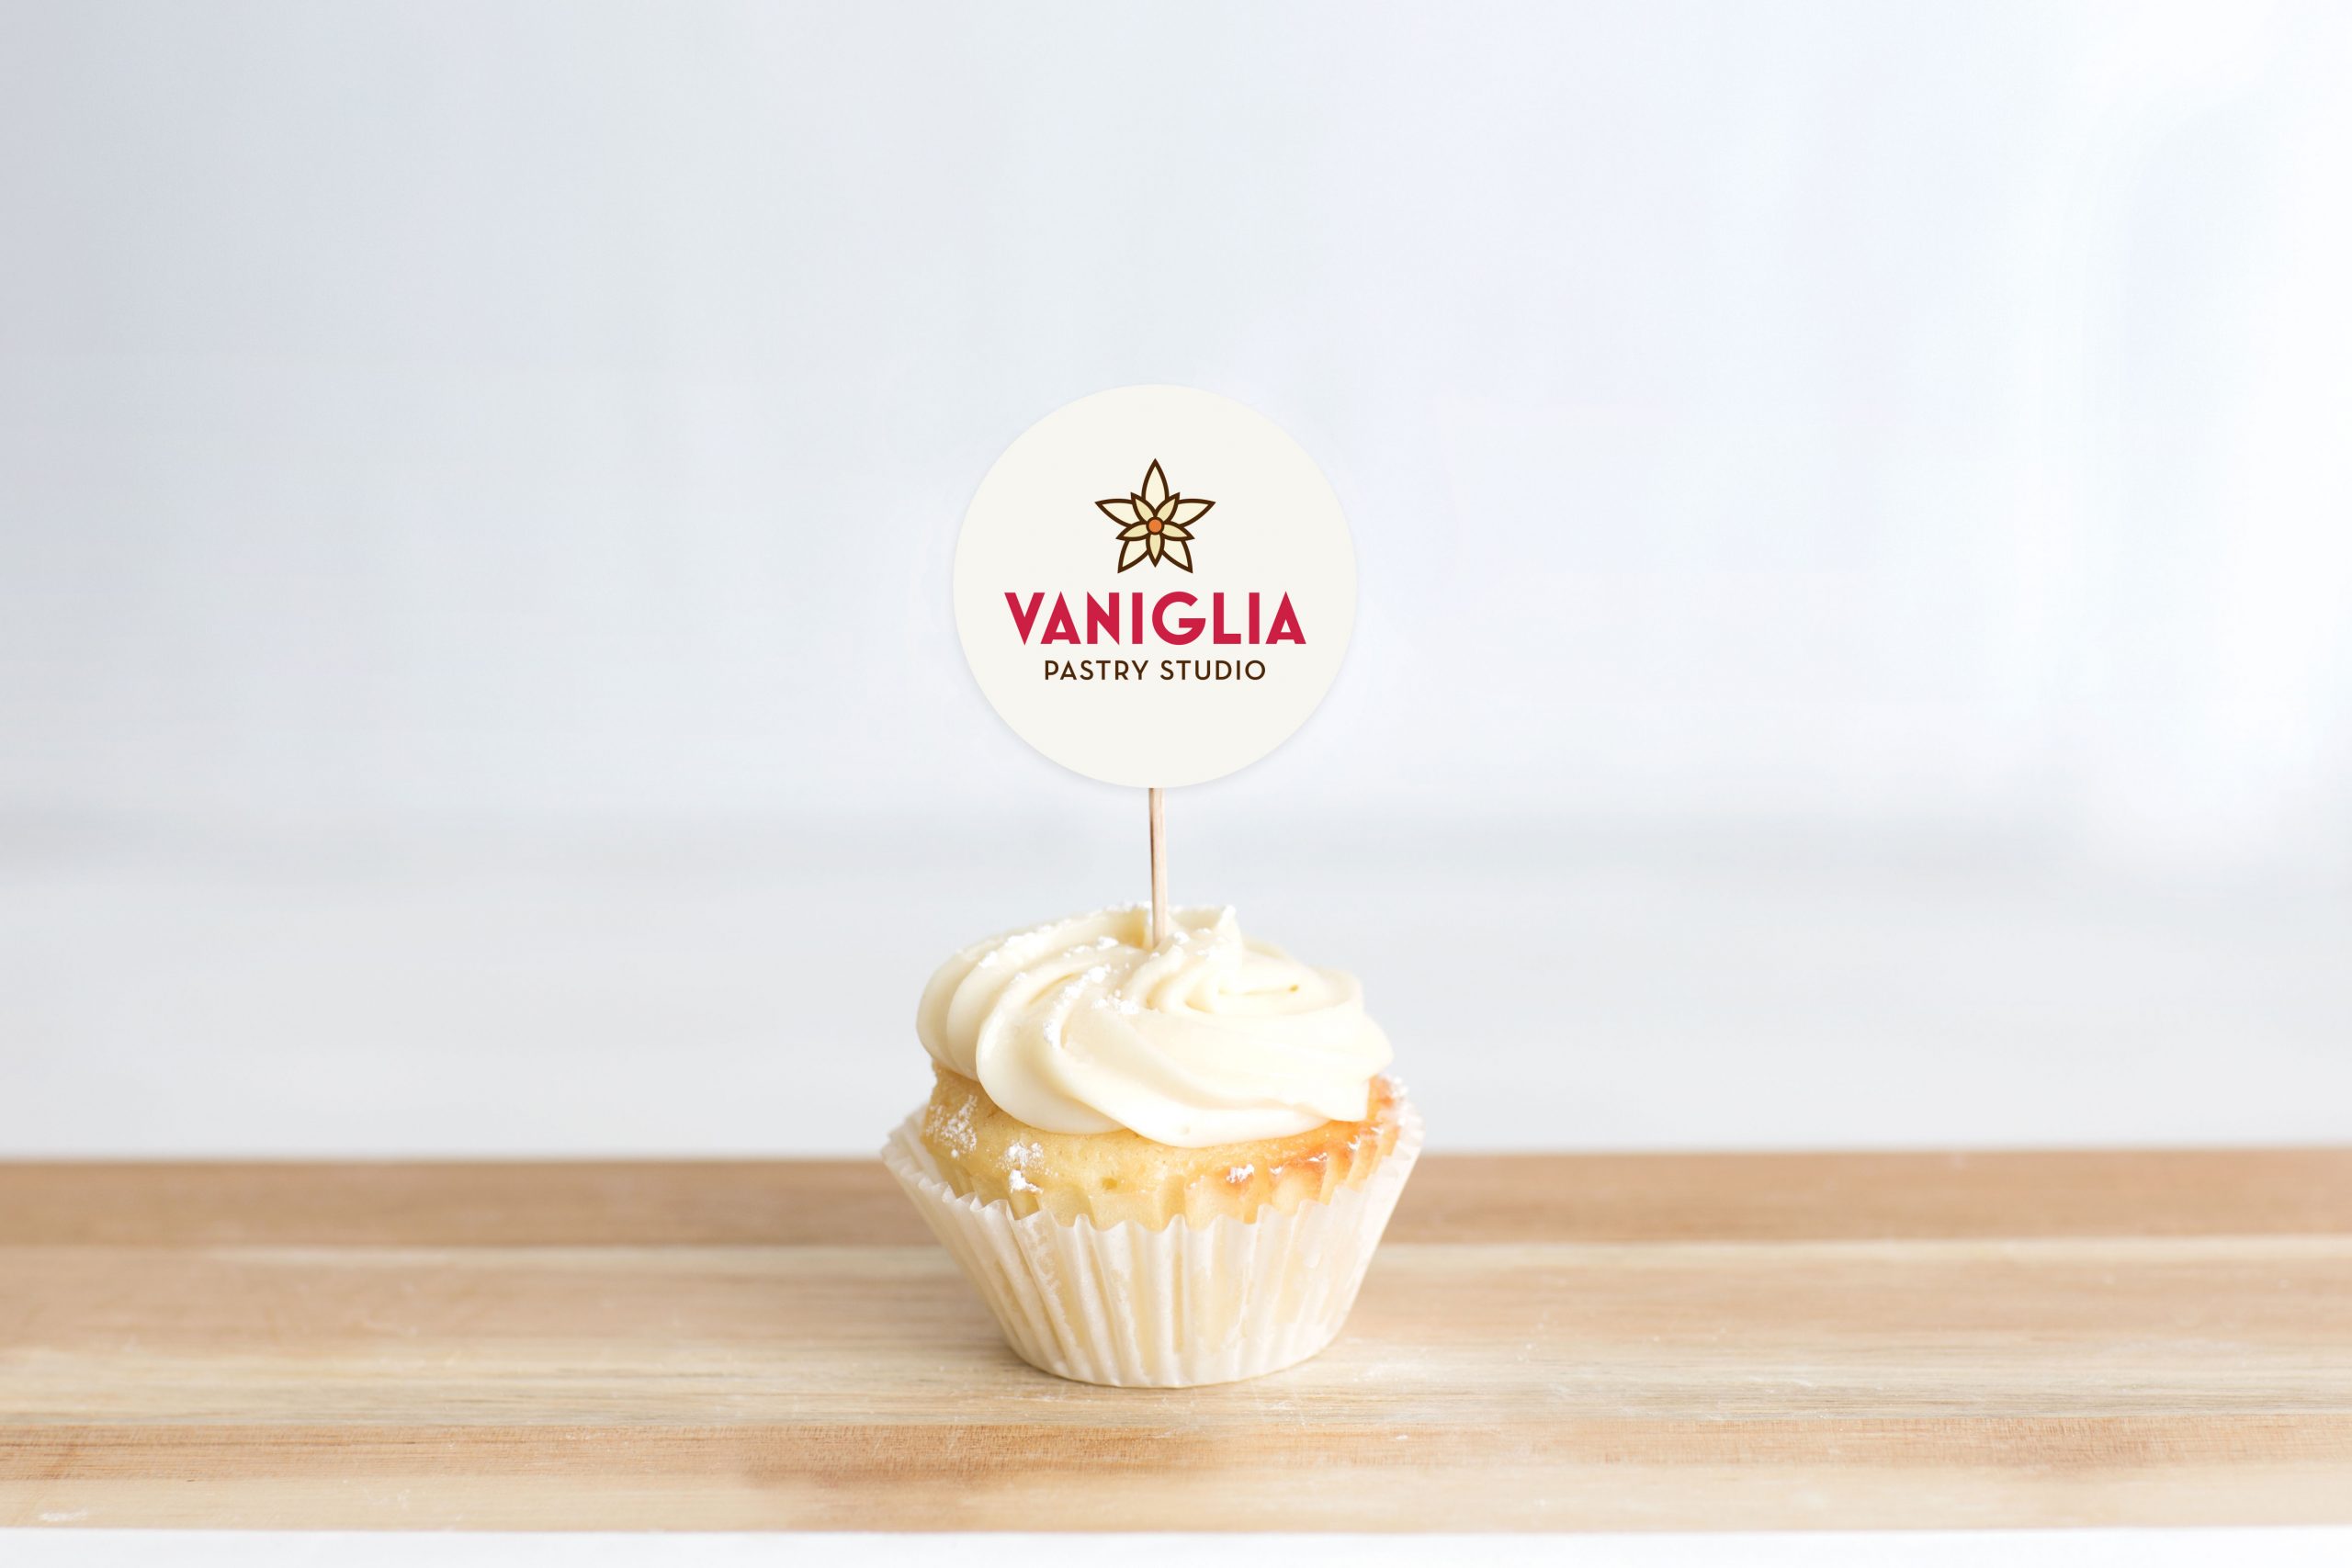 vaniglia-pastry-studio-connecticut-logo-design-2